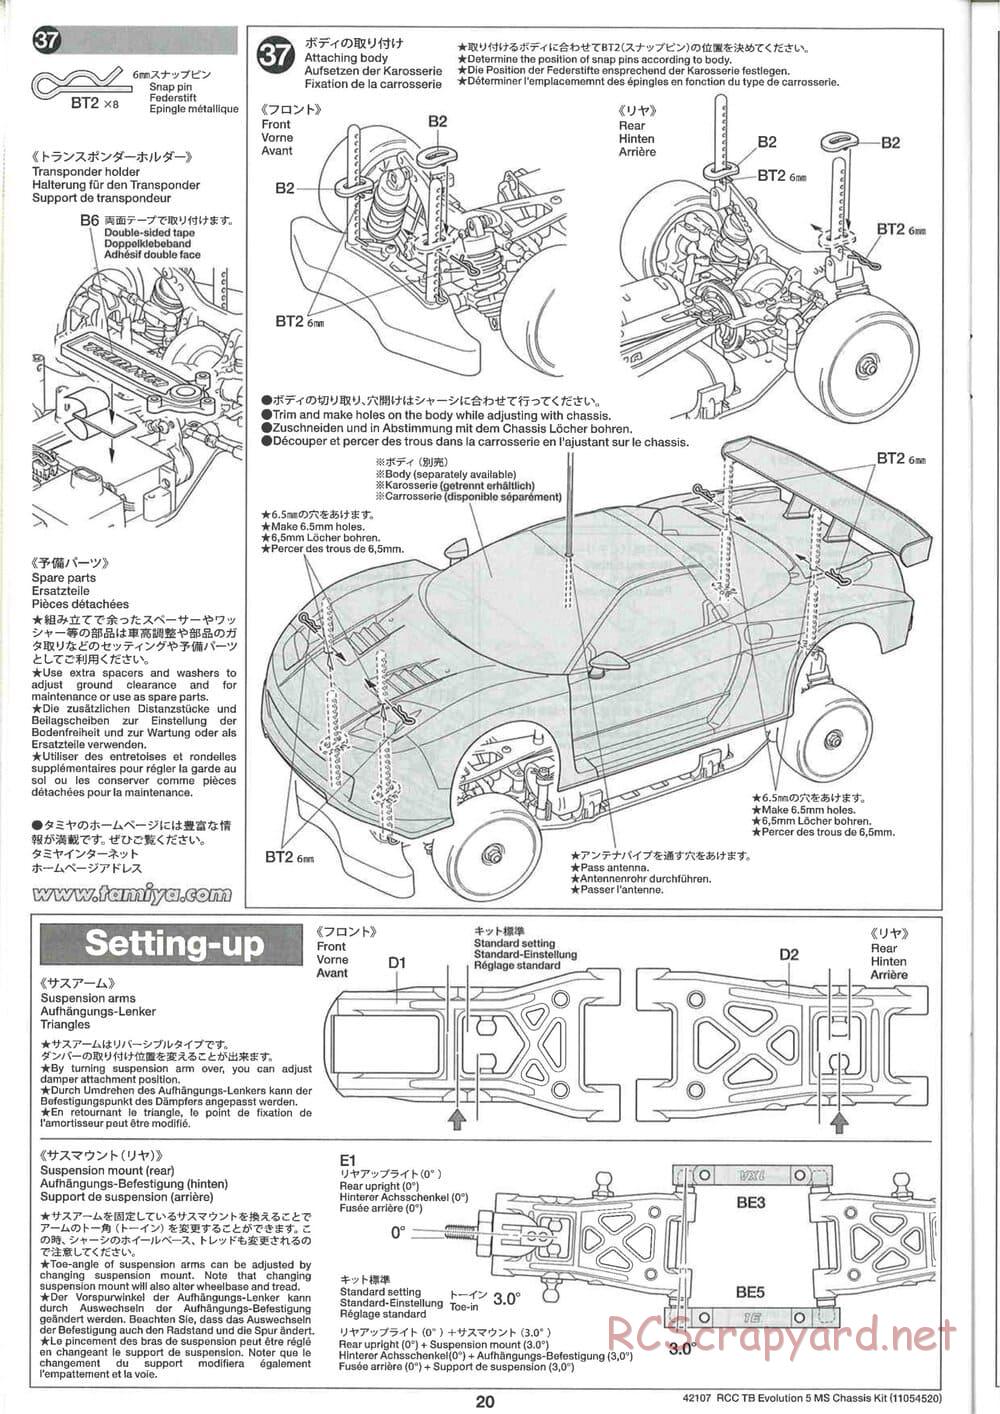 Tamiya - TB Evolution 5 MS Chassis - Manual - Page 20